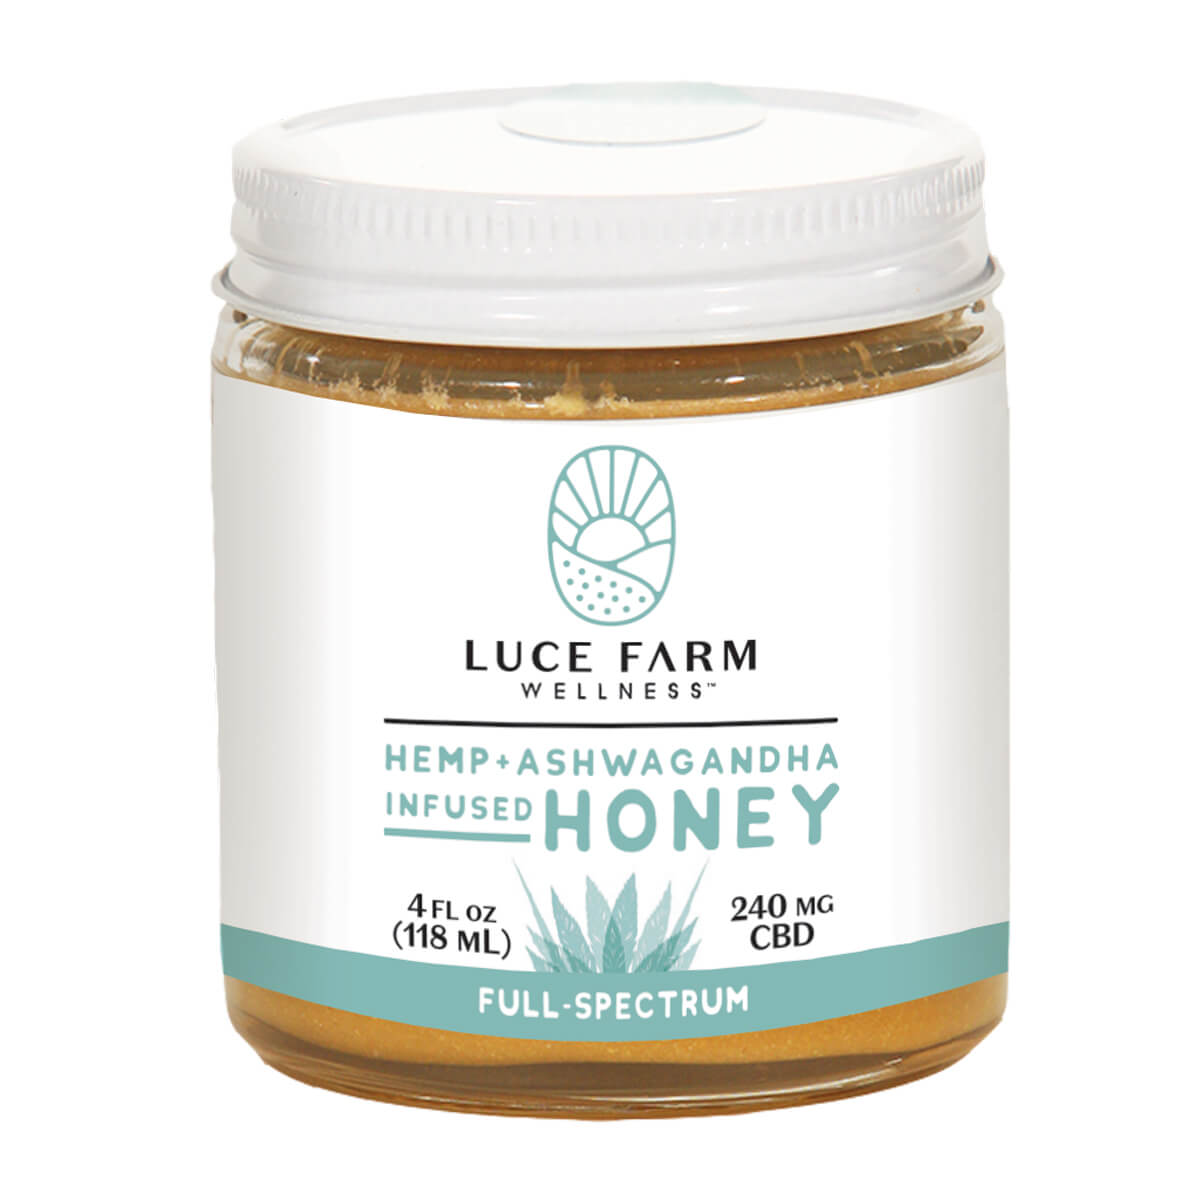 Luce Farm hemp honey jar